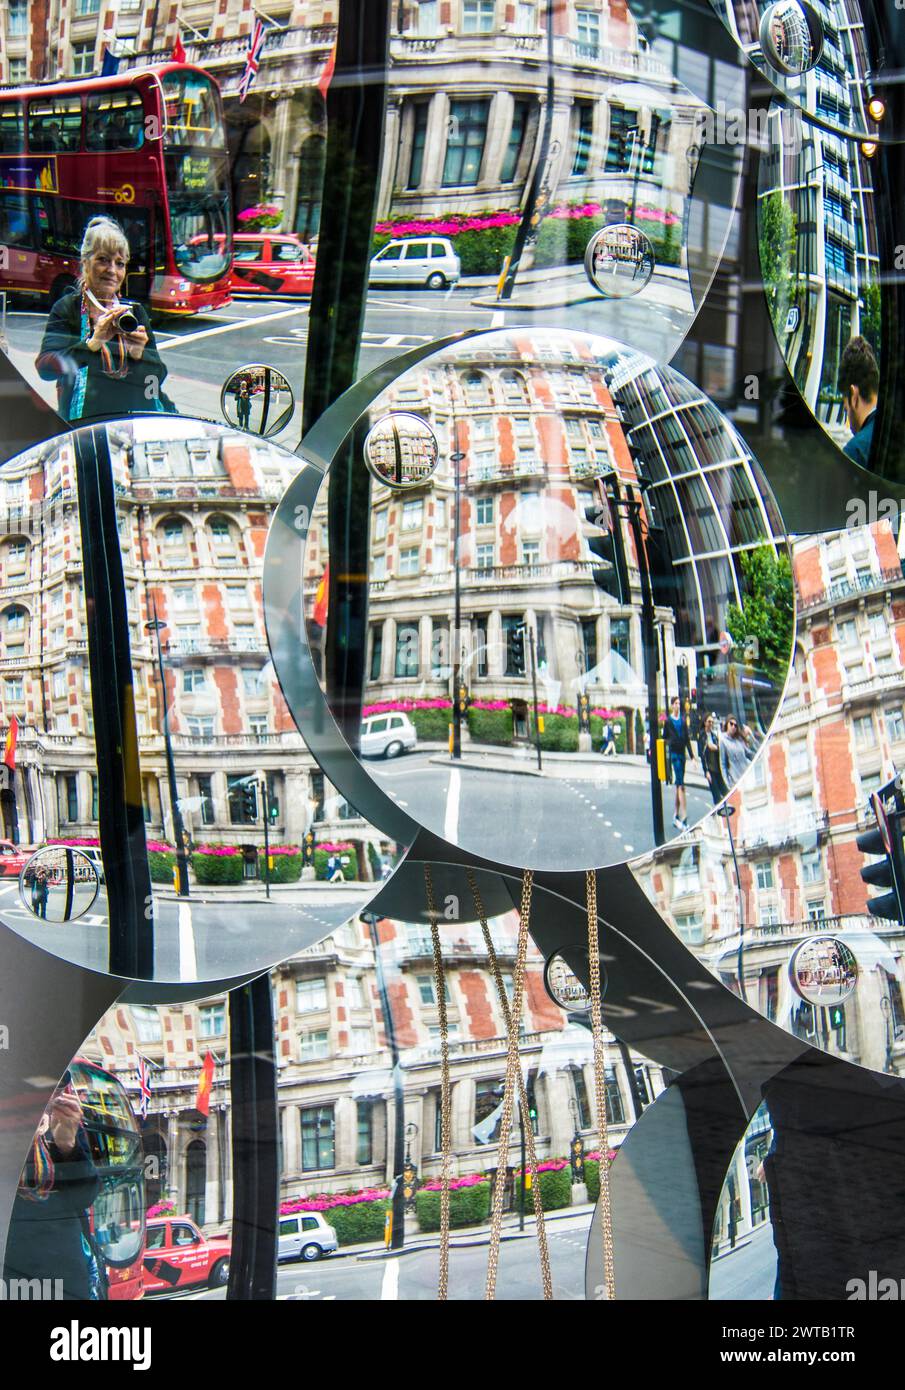 Reflexionen von Gebäuden in der Piccadilly Street im Schaufensterfenster mit mehreren konkaven Spiegeln - London, Großbritannien Stockfoto